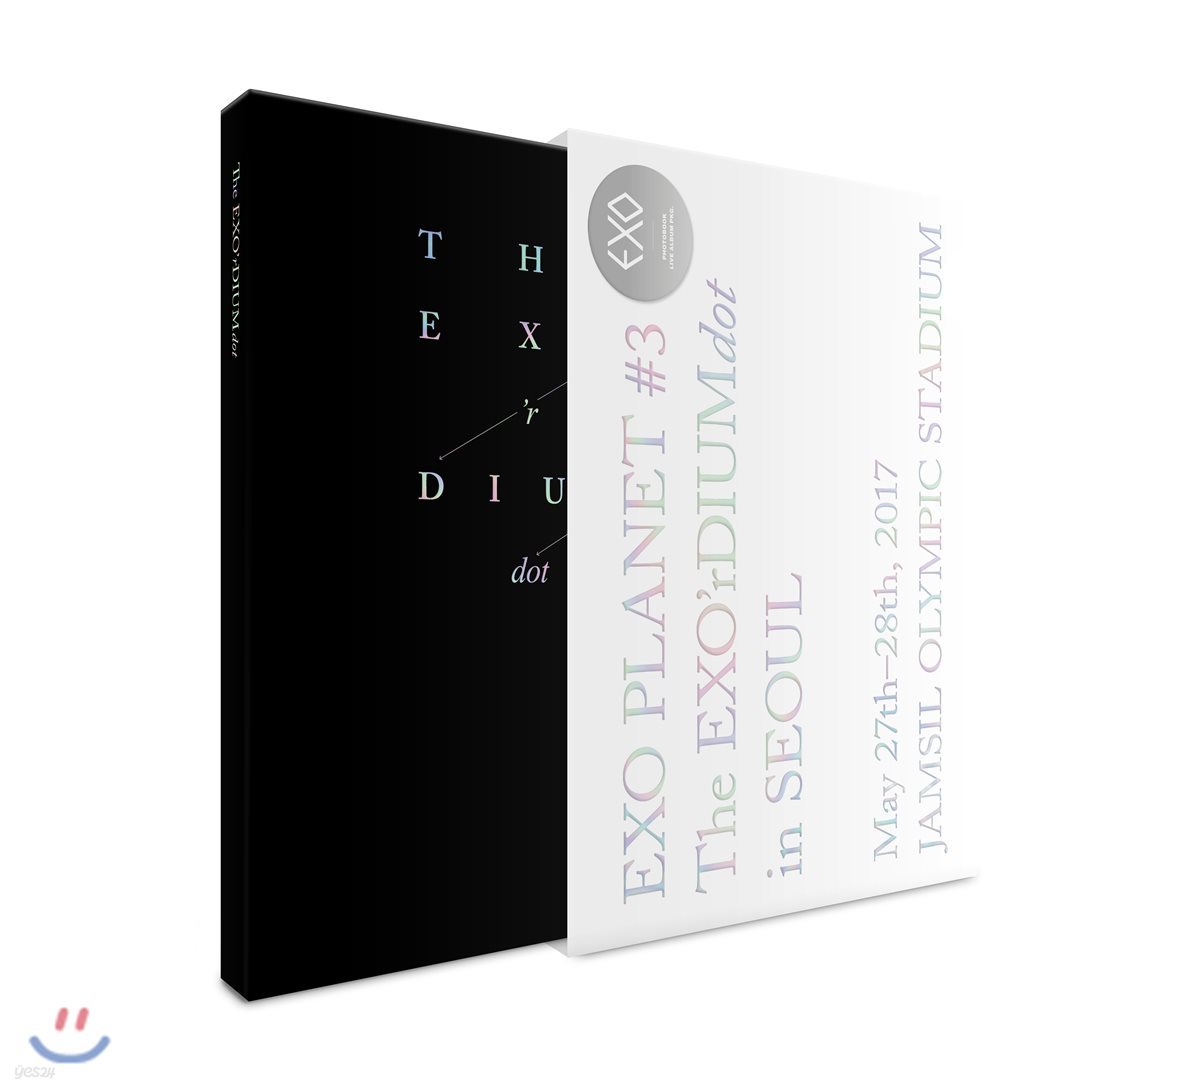 엑소 (EXO) - EXO Planet #3 -The EXO'rDIUM[dot]- 공연 화보집 & 라이브 앨범